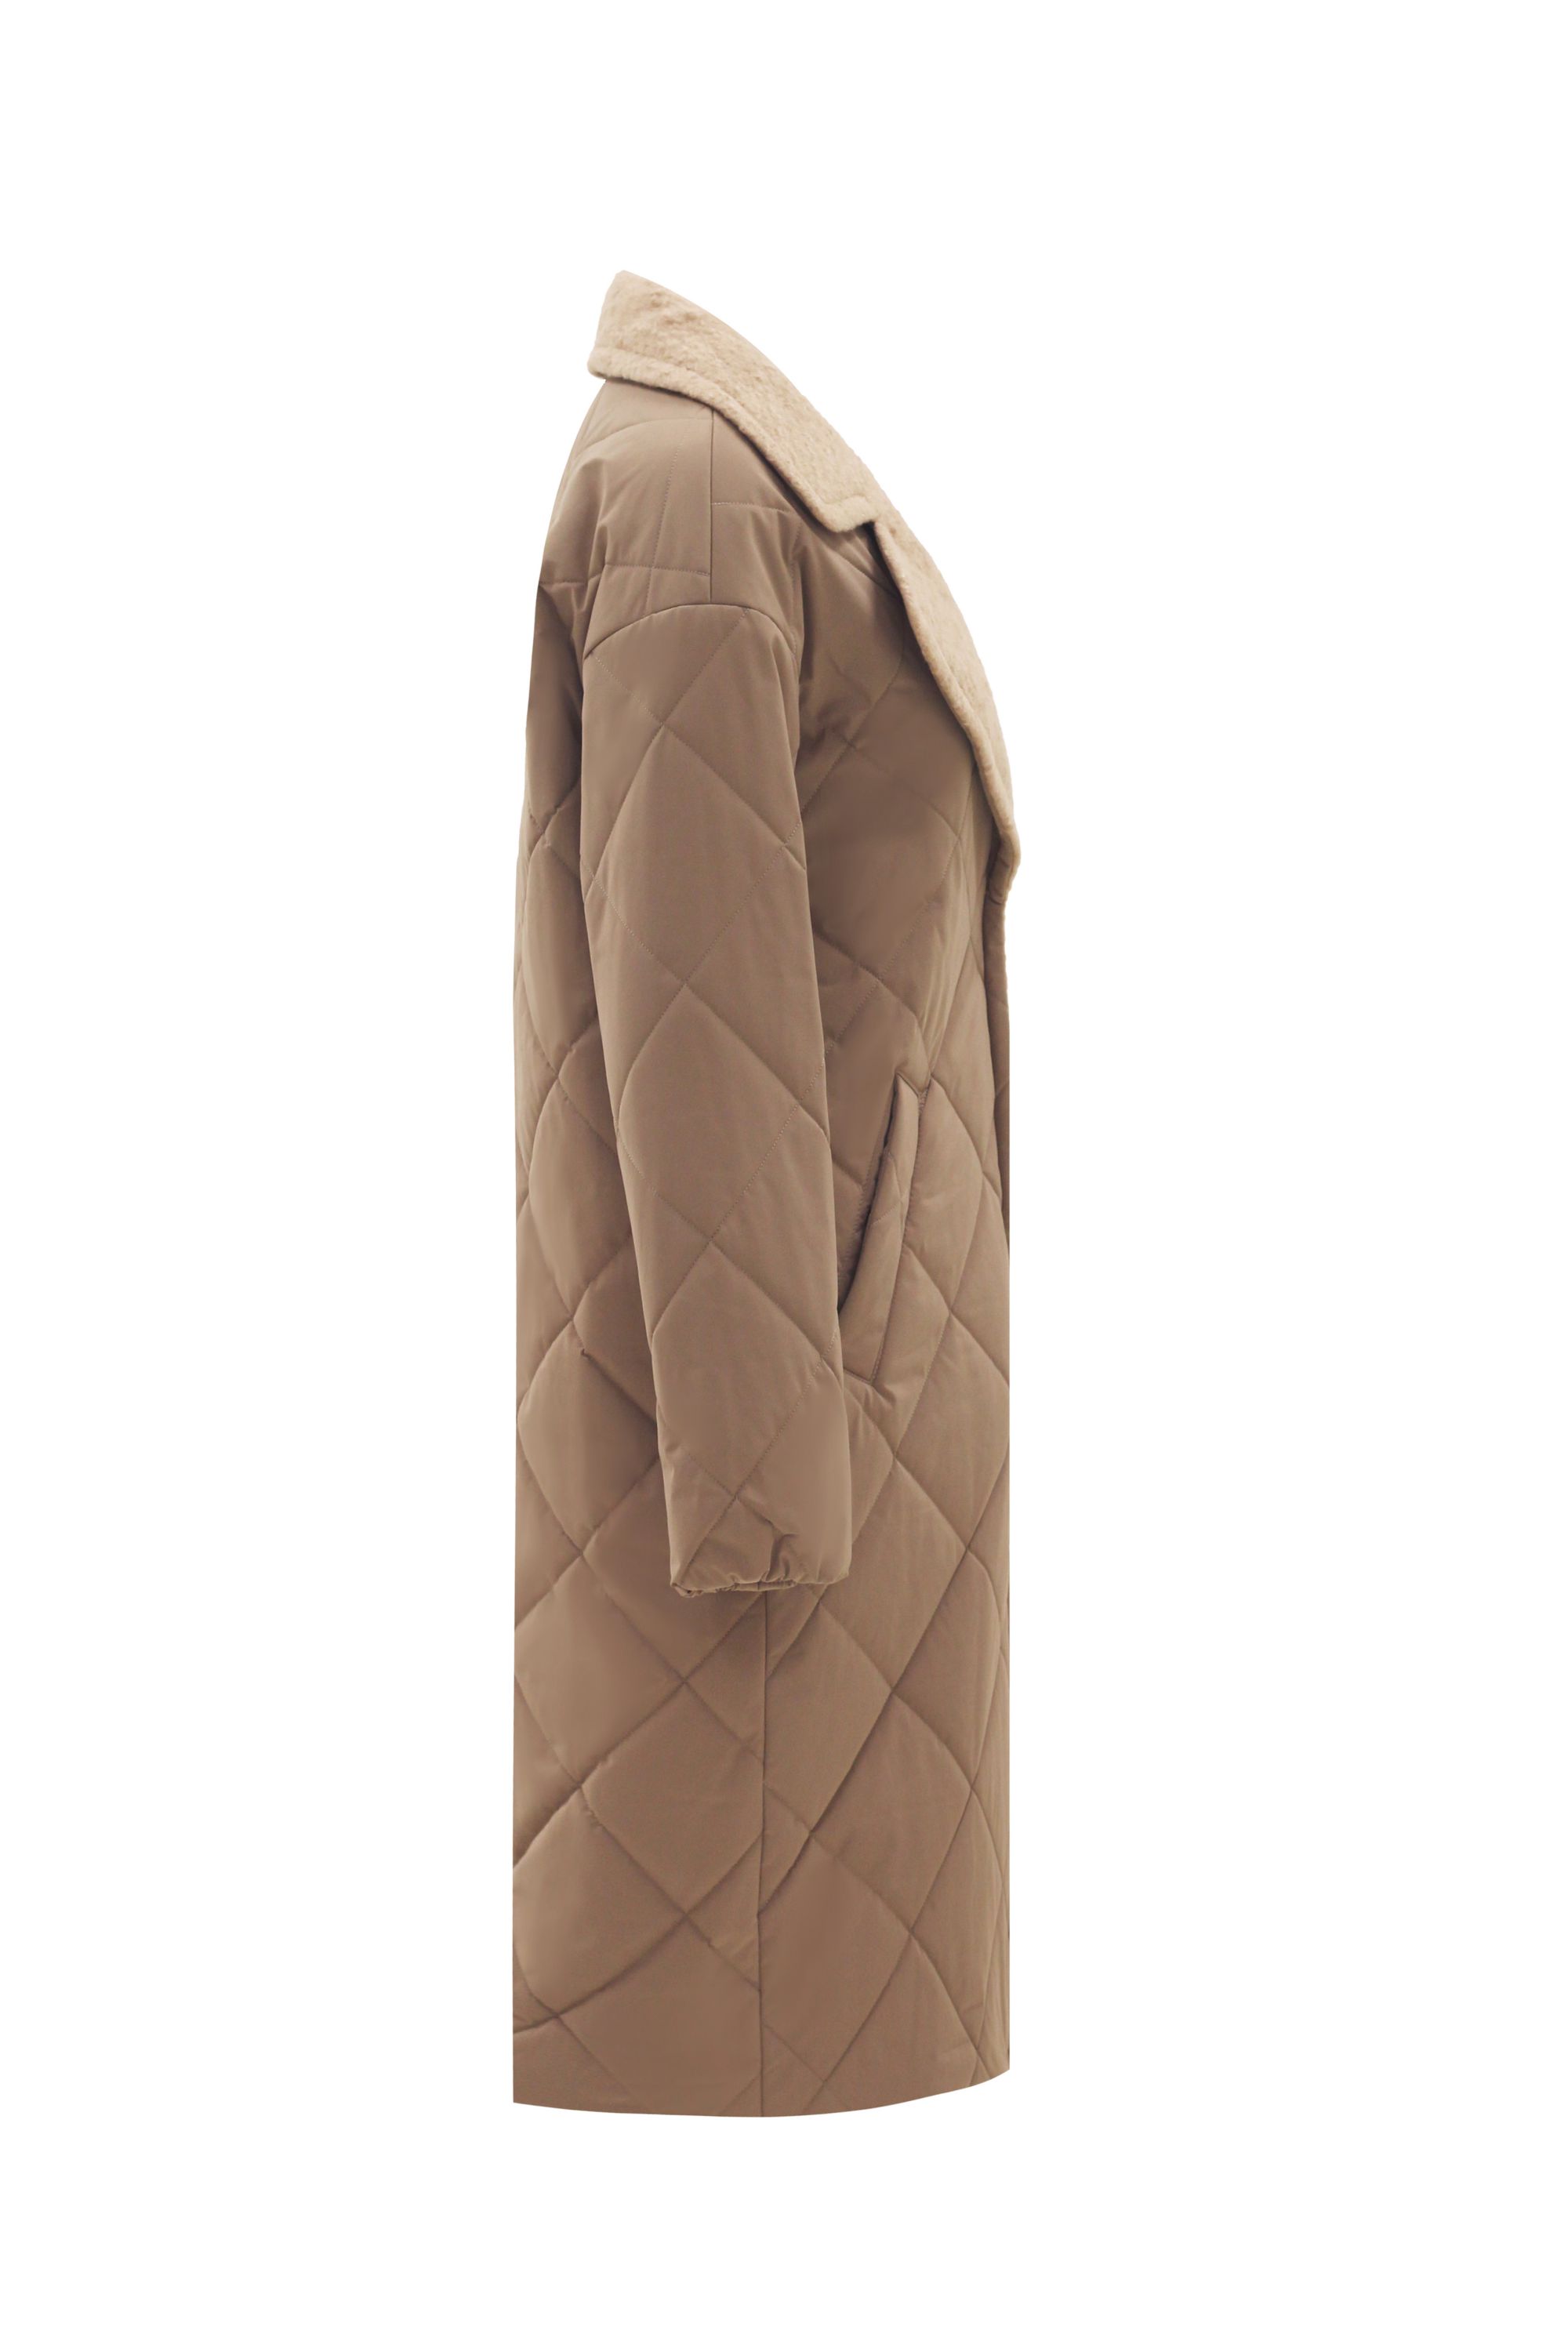 Пальто женское плащевое утепленное 5-12194-1